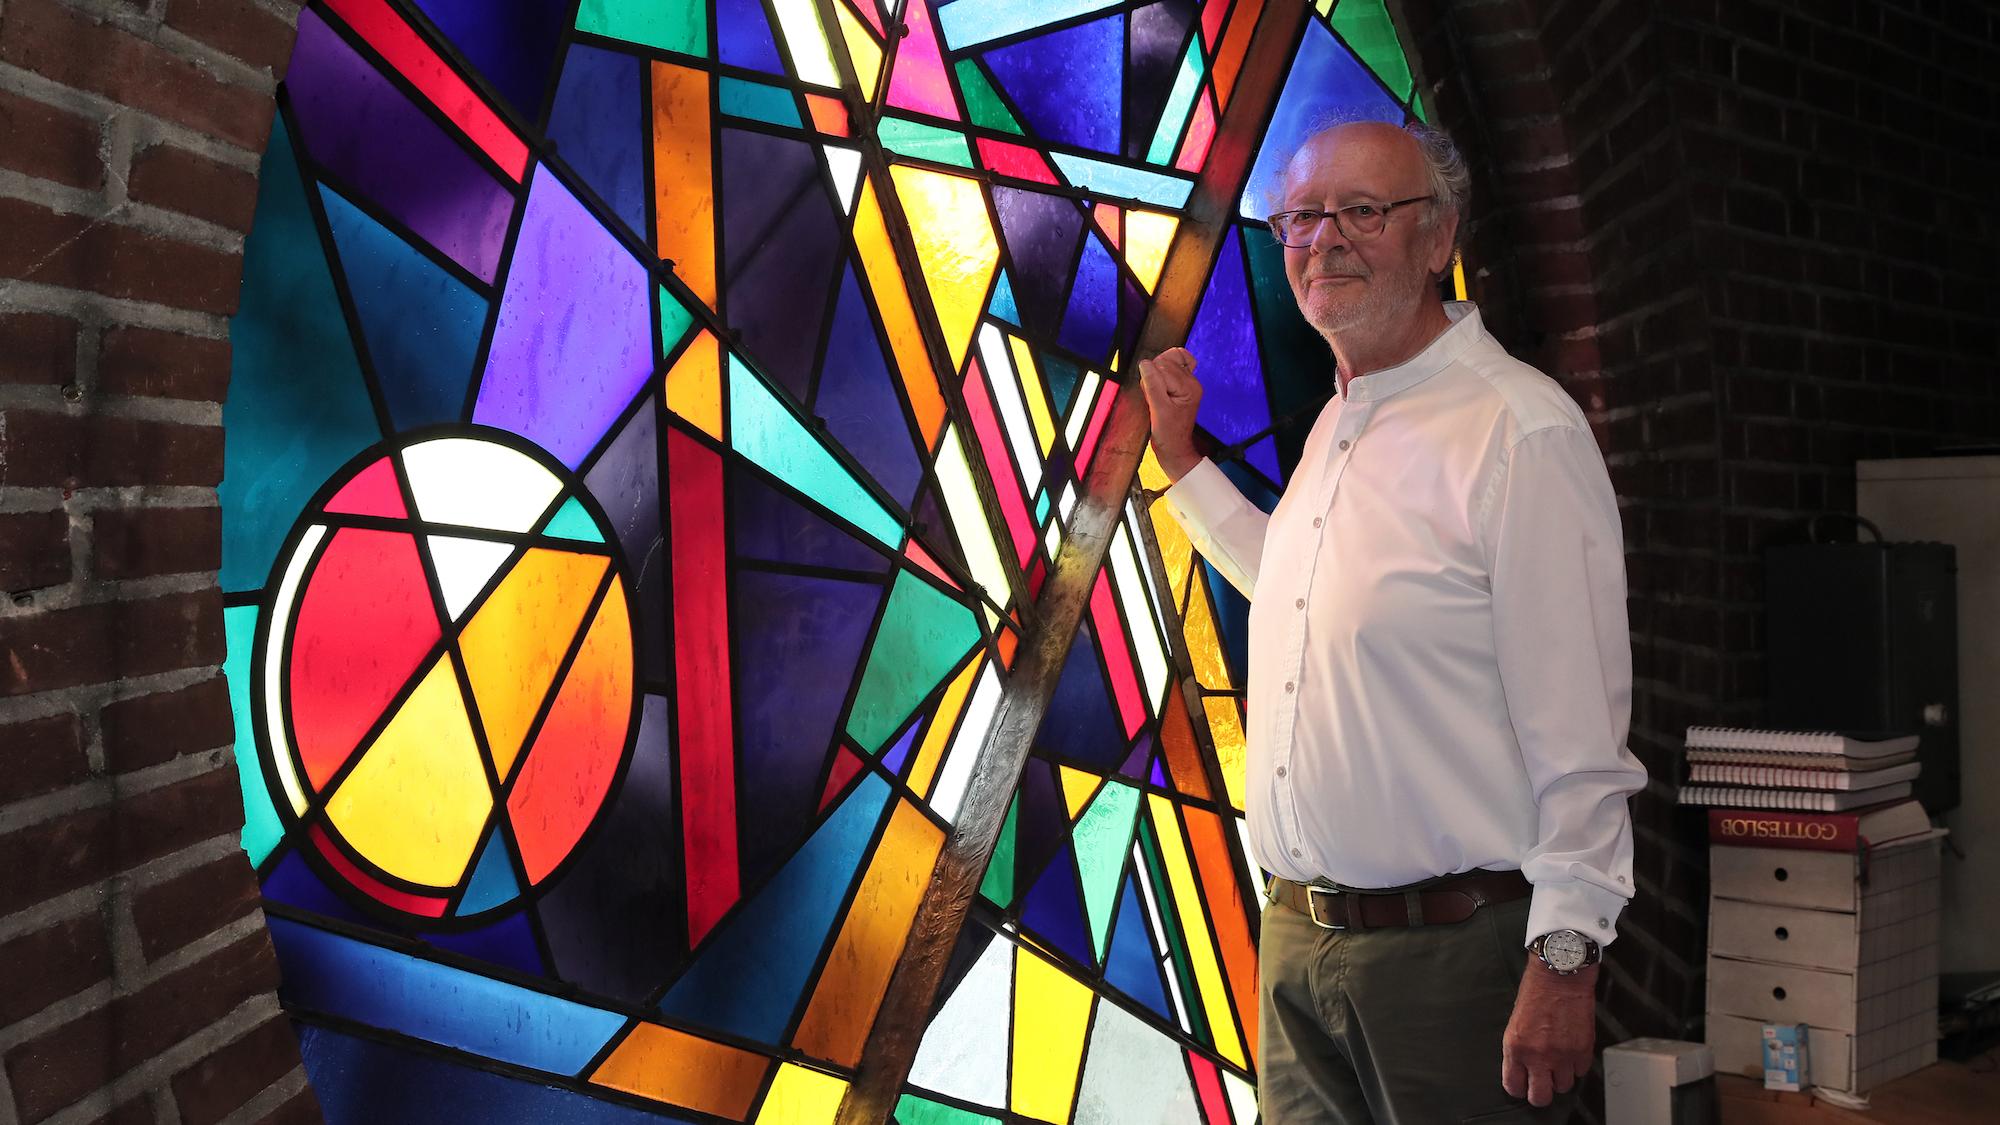 Hans Riskes, stellvertretender  Kirchenvorstand, vor dem von Joachim Klos gestalteten Kirchenfenster über der Orgelempore. (c) Dirk Jochmann